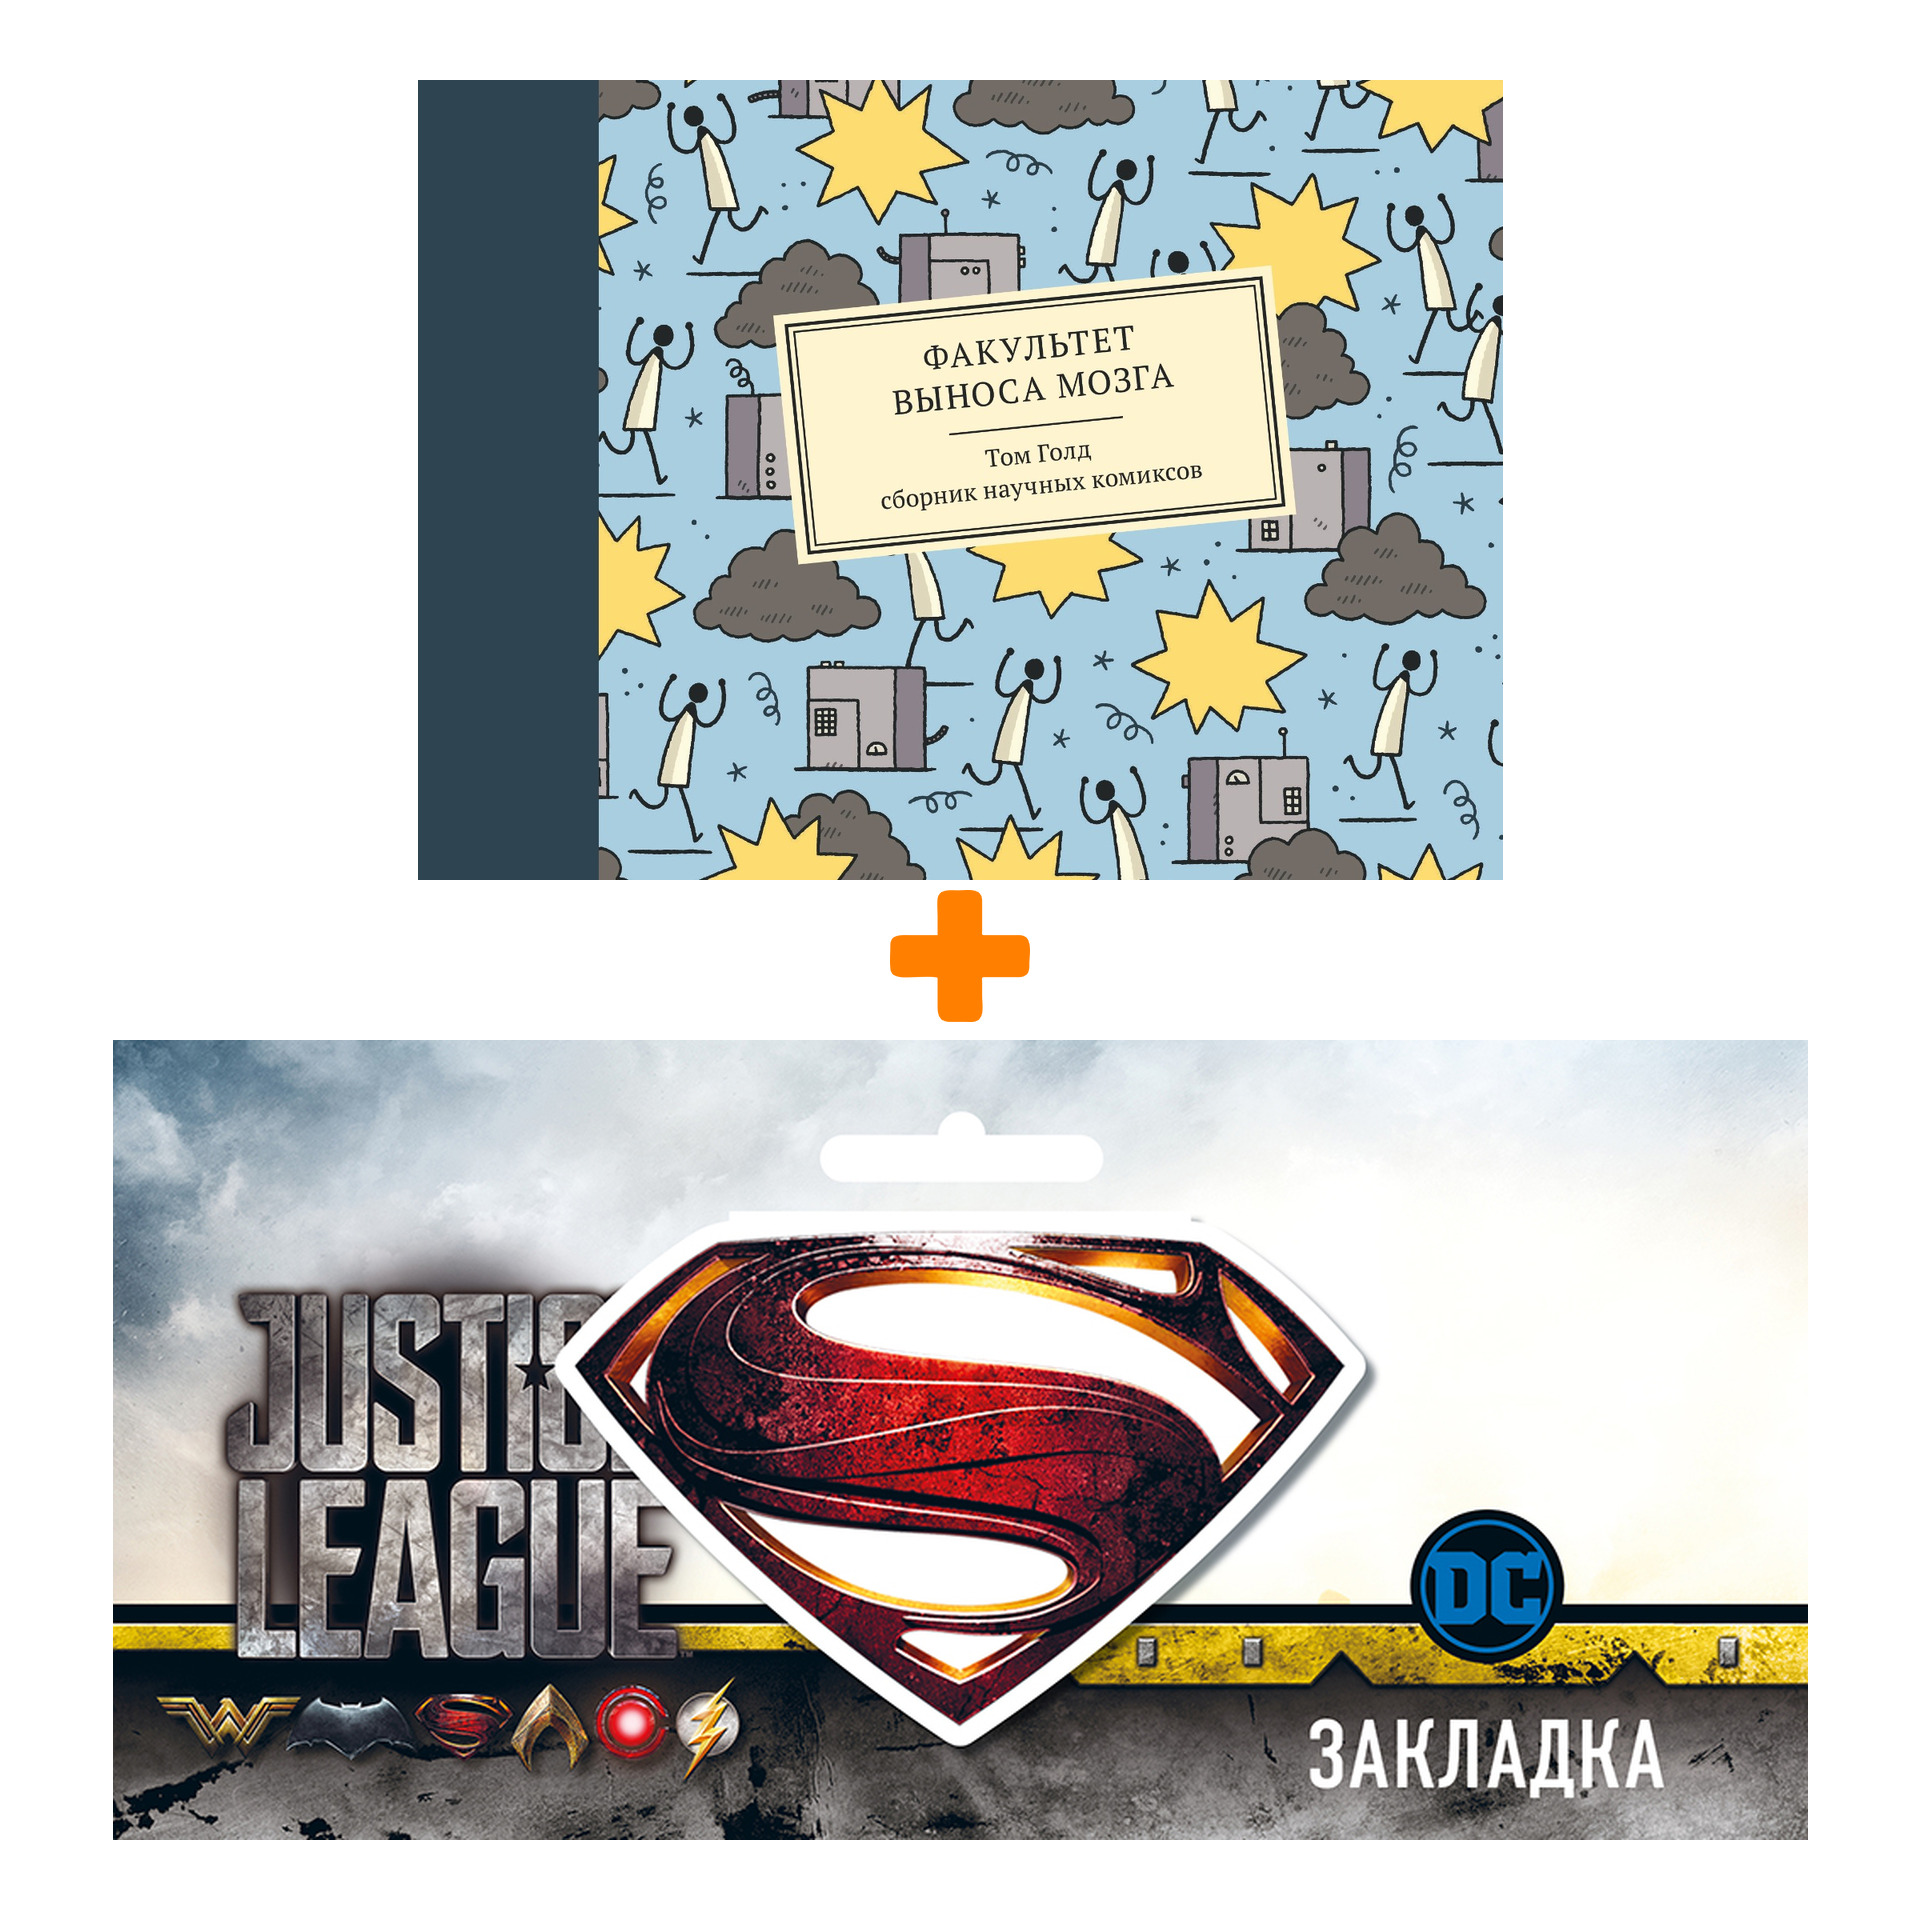 Набор Сборник научных комиксов Факультет выноса мозга + Закладка DC Justice League Superman магнитная